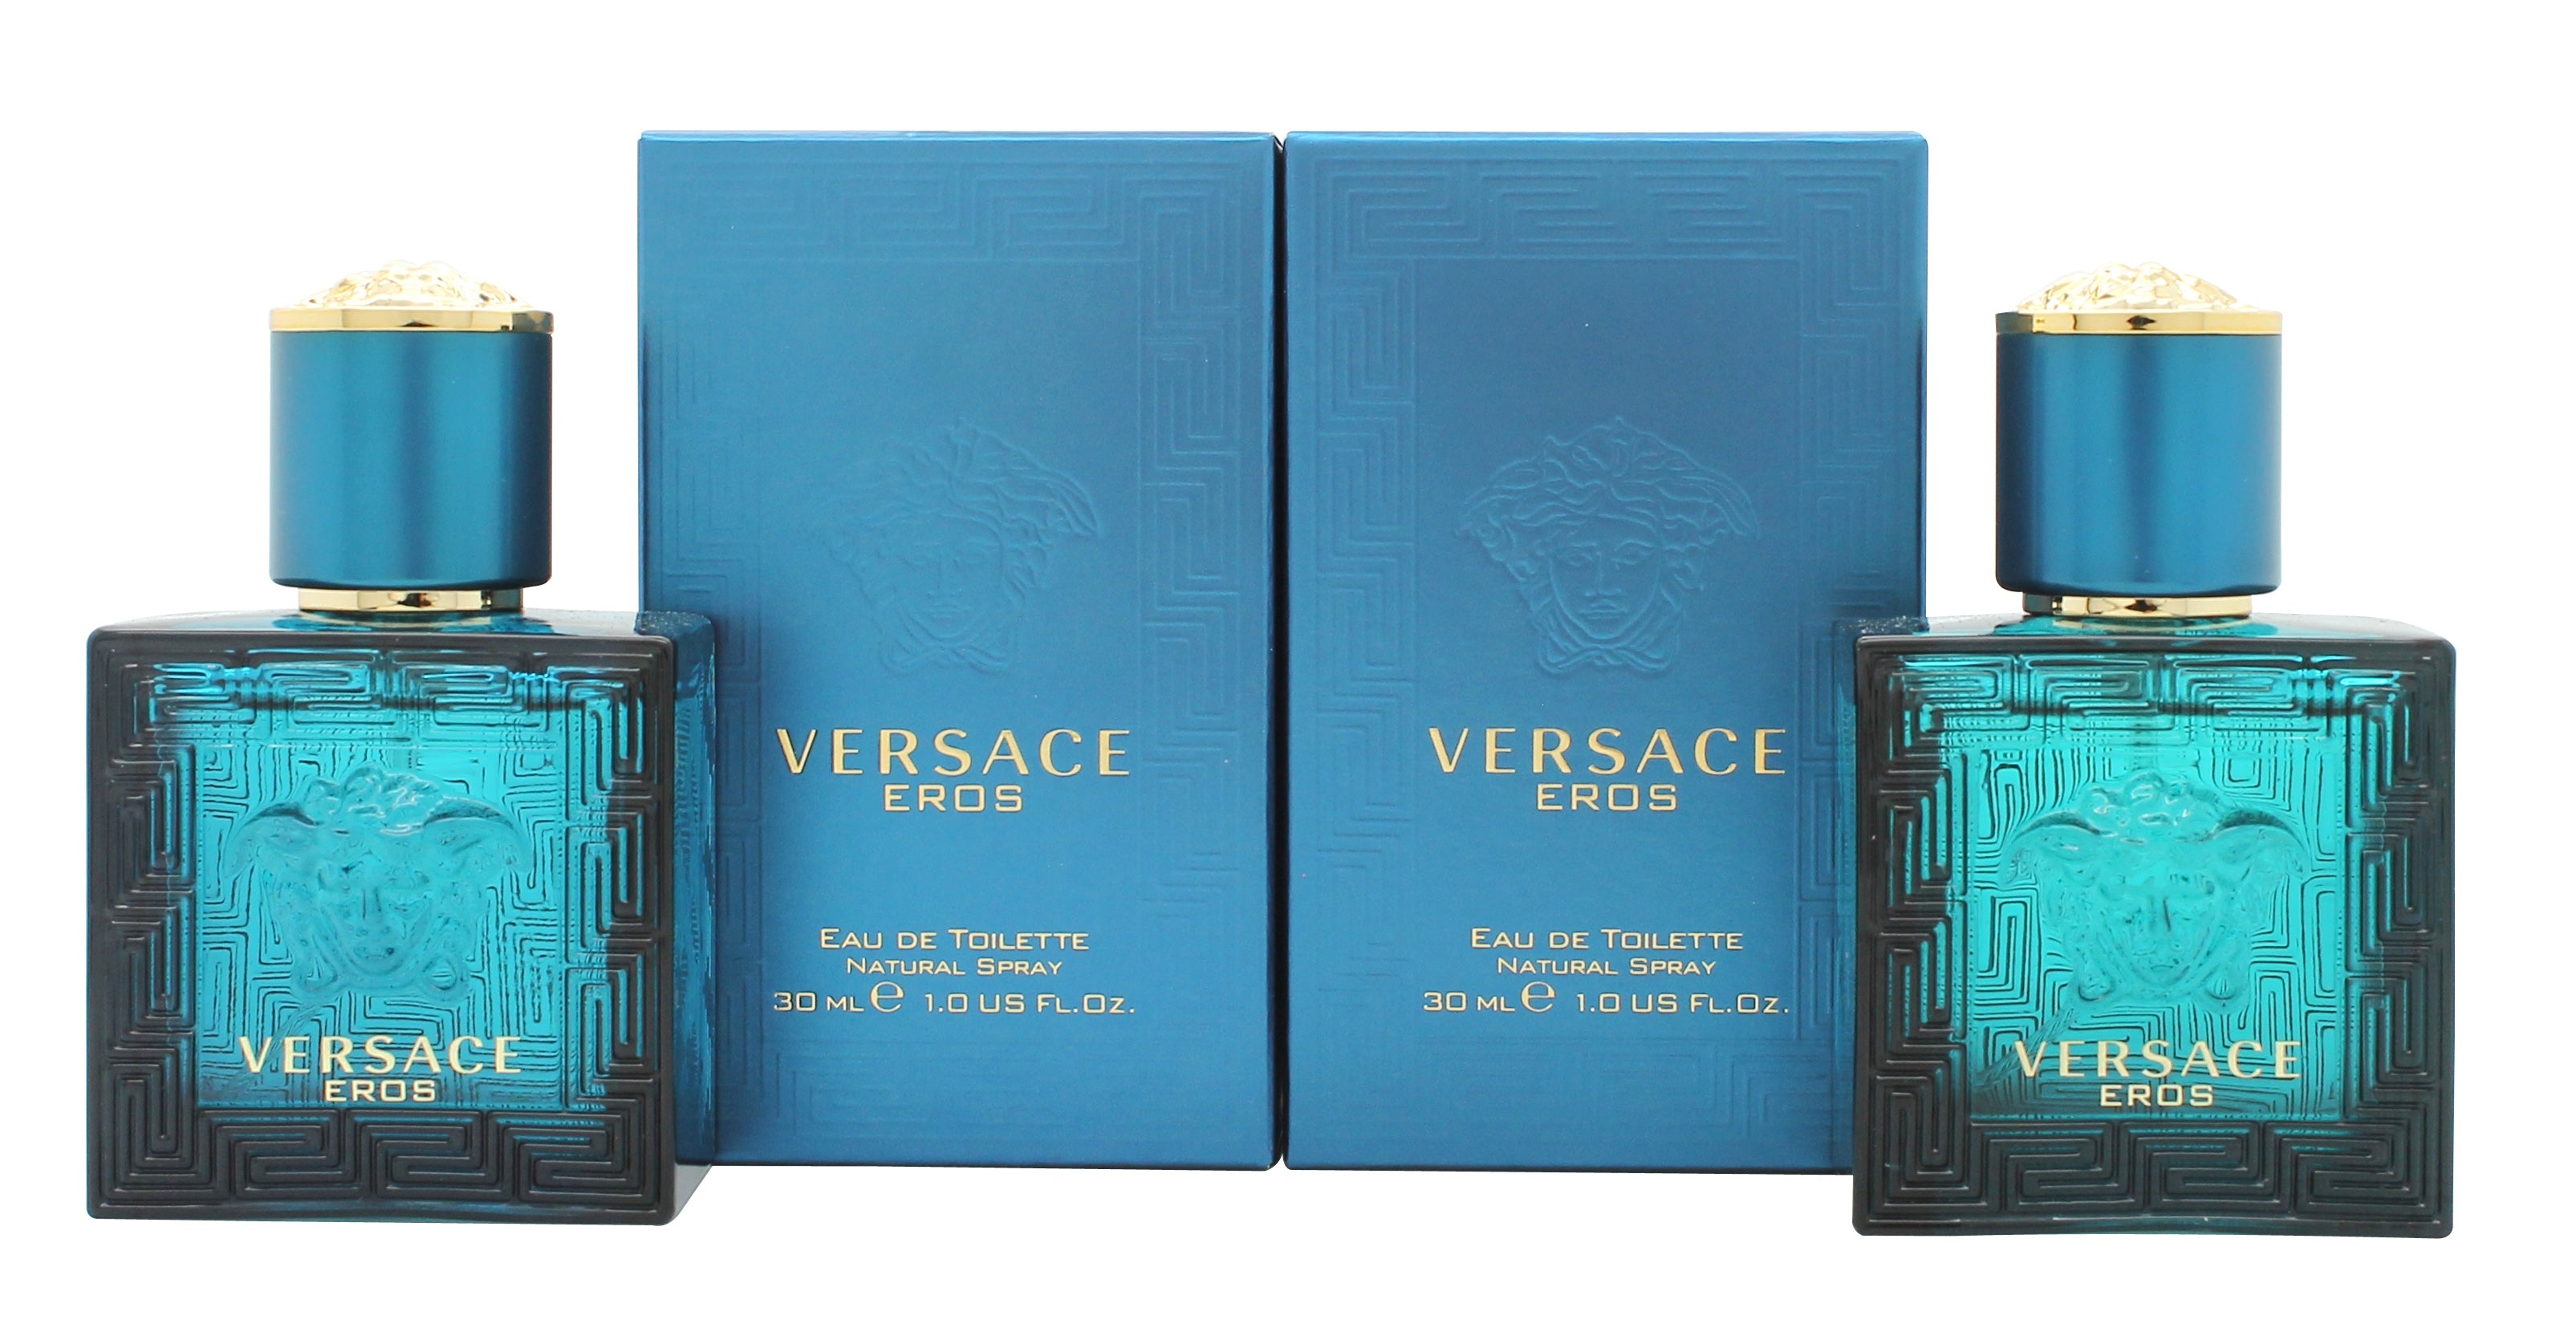 View Versace Eros Gift Set 2 x 30ml EDT Spray information